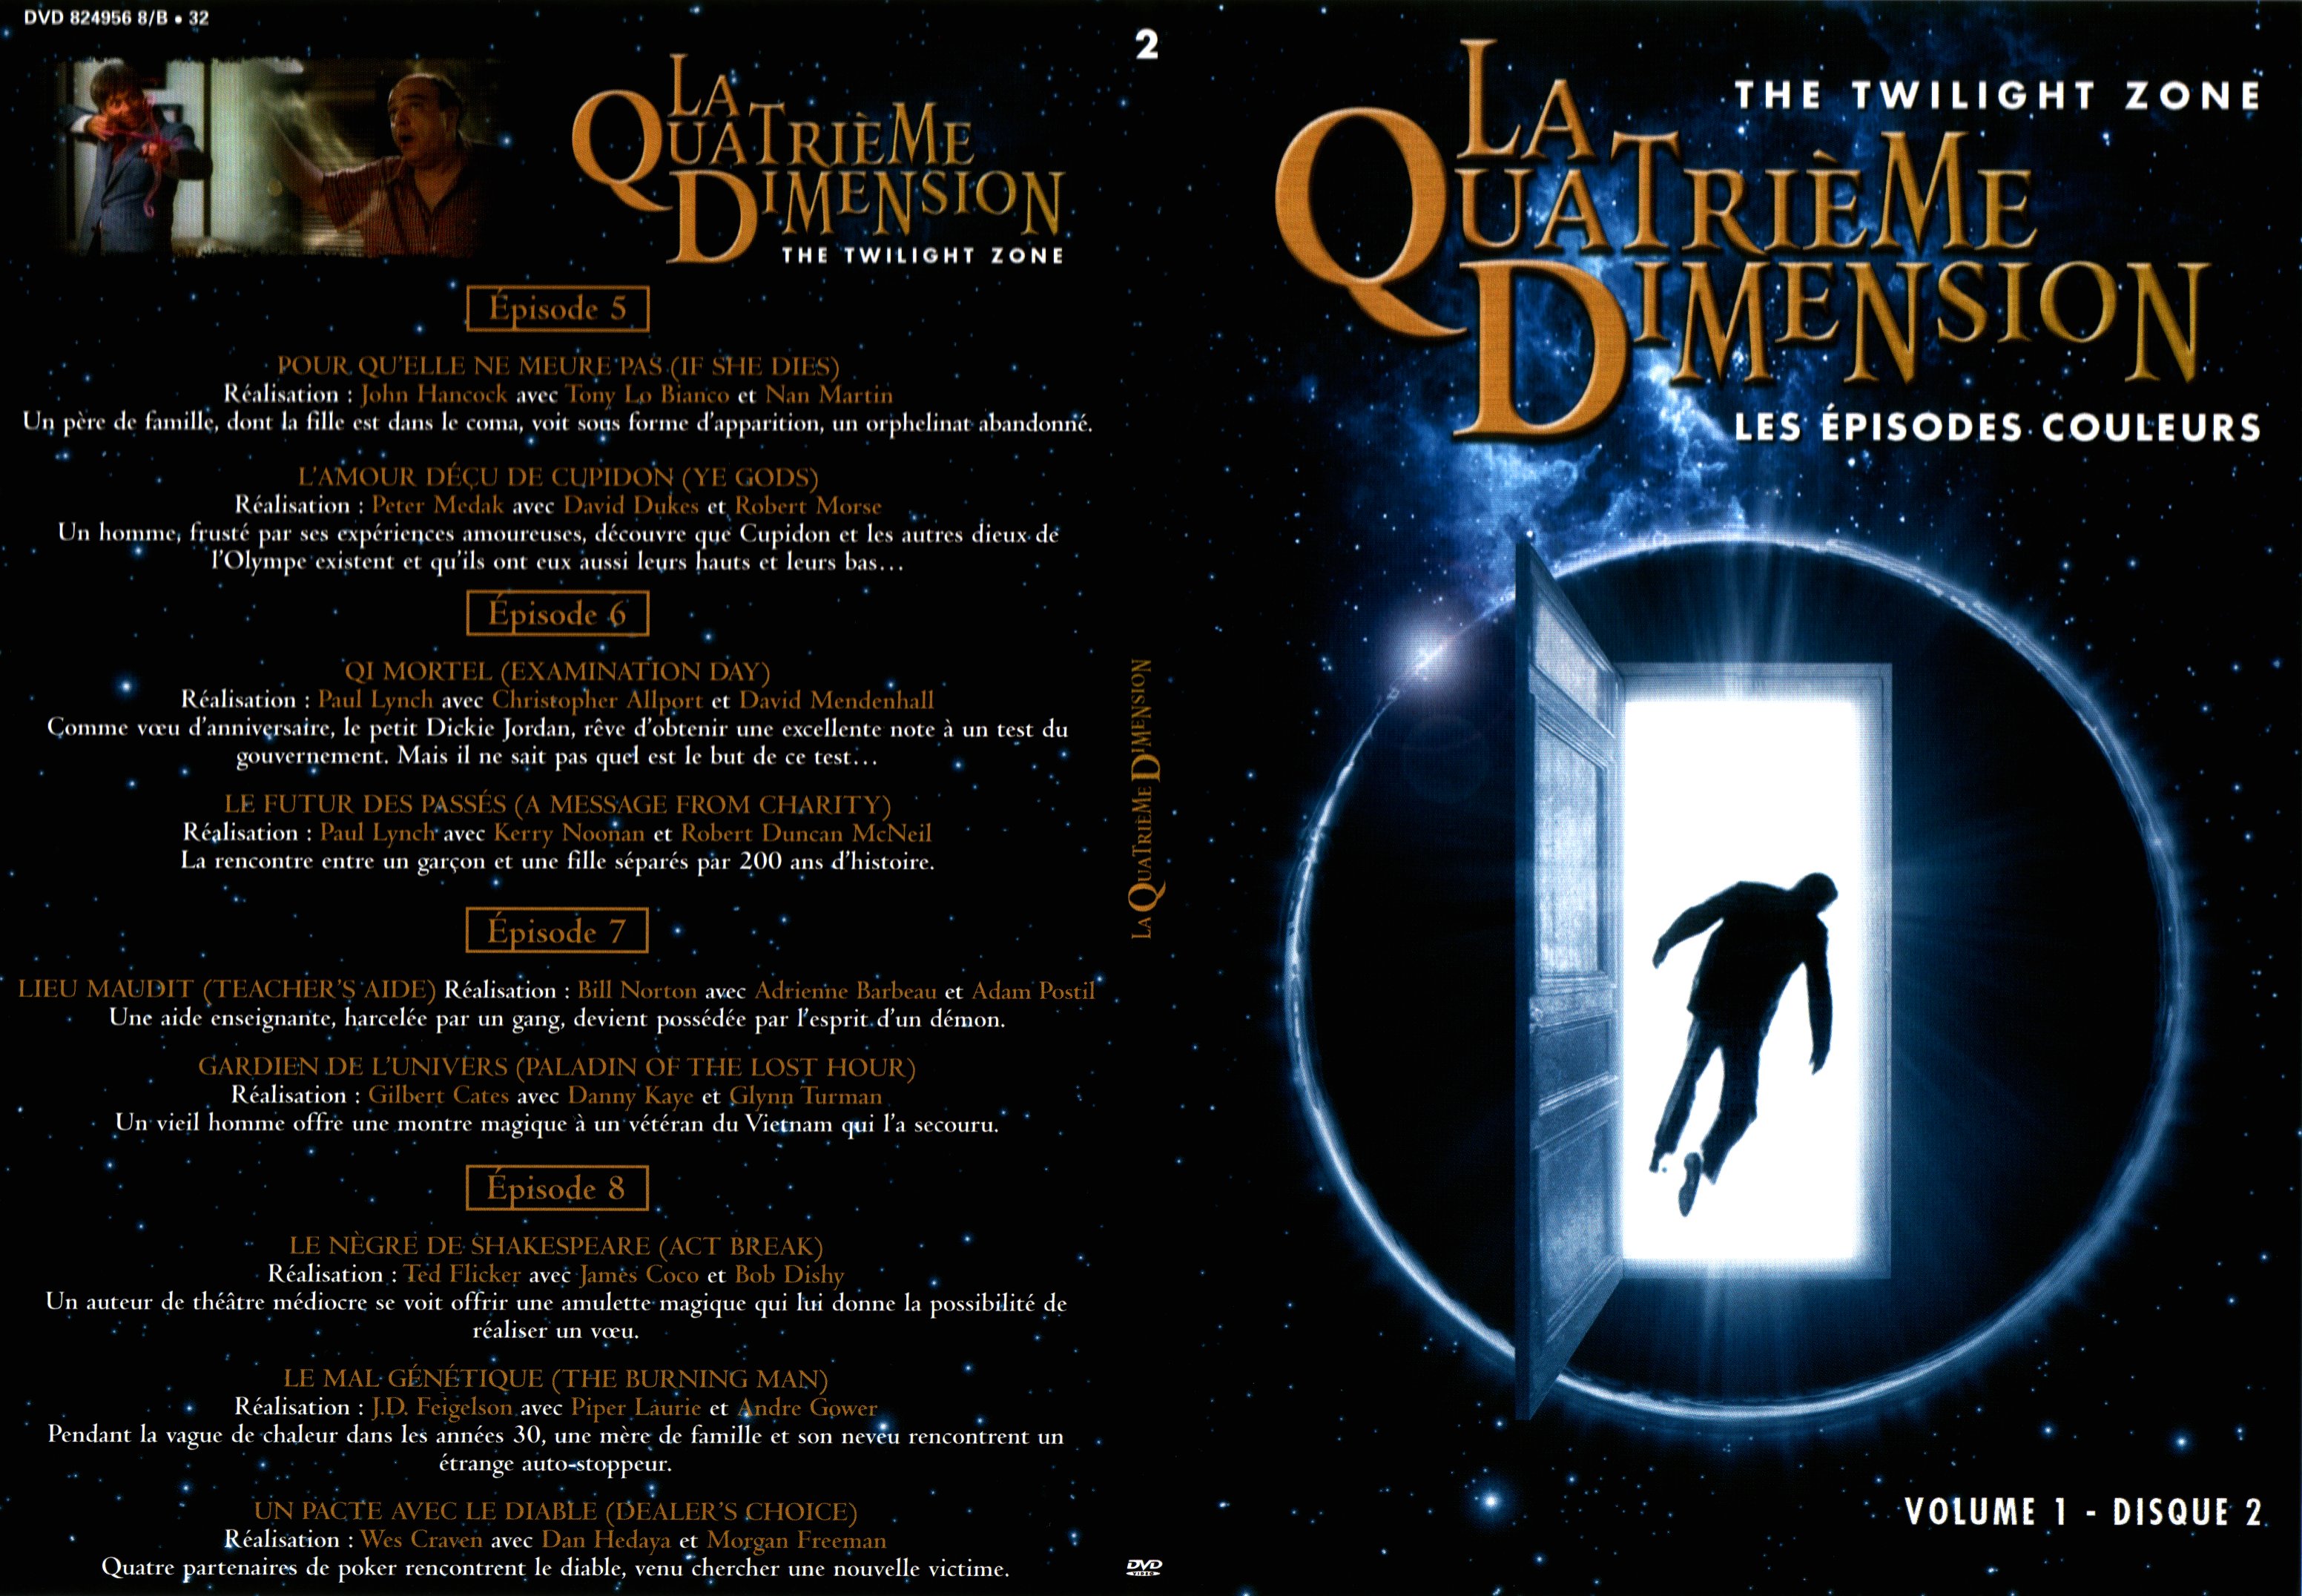 Jaquette DVD La quatrime dimension - Episodes couleurs vol 1 DVD 2